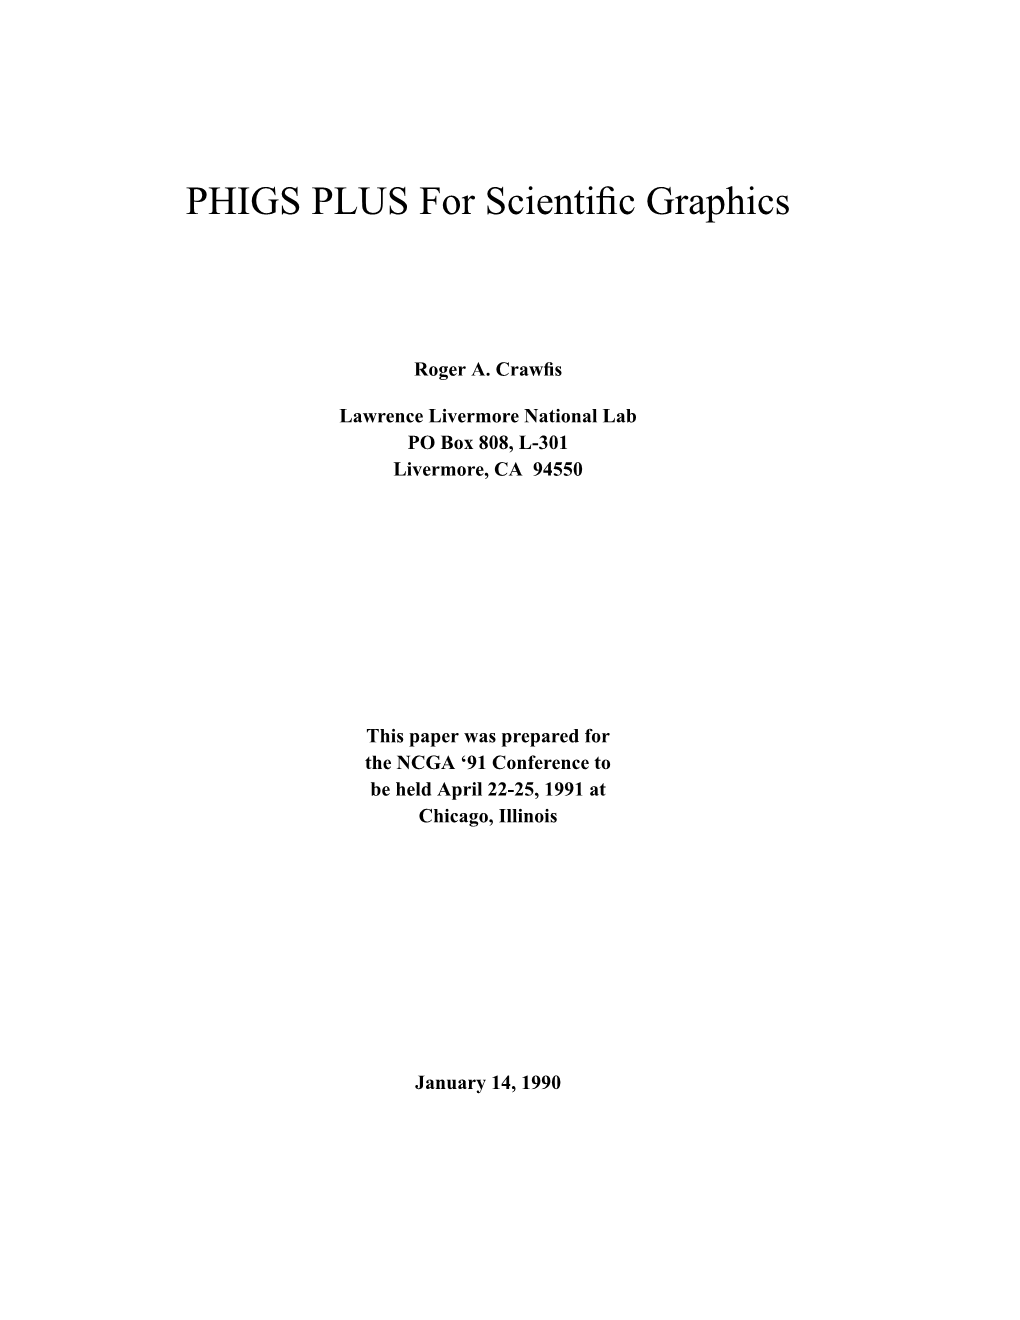 PHIGS PLUS for Scientific Graphics